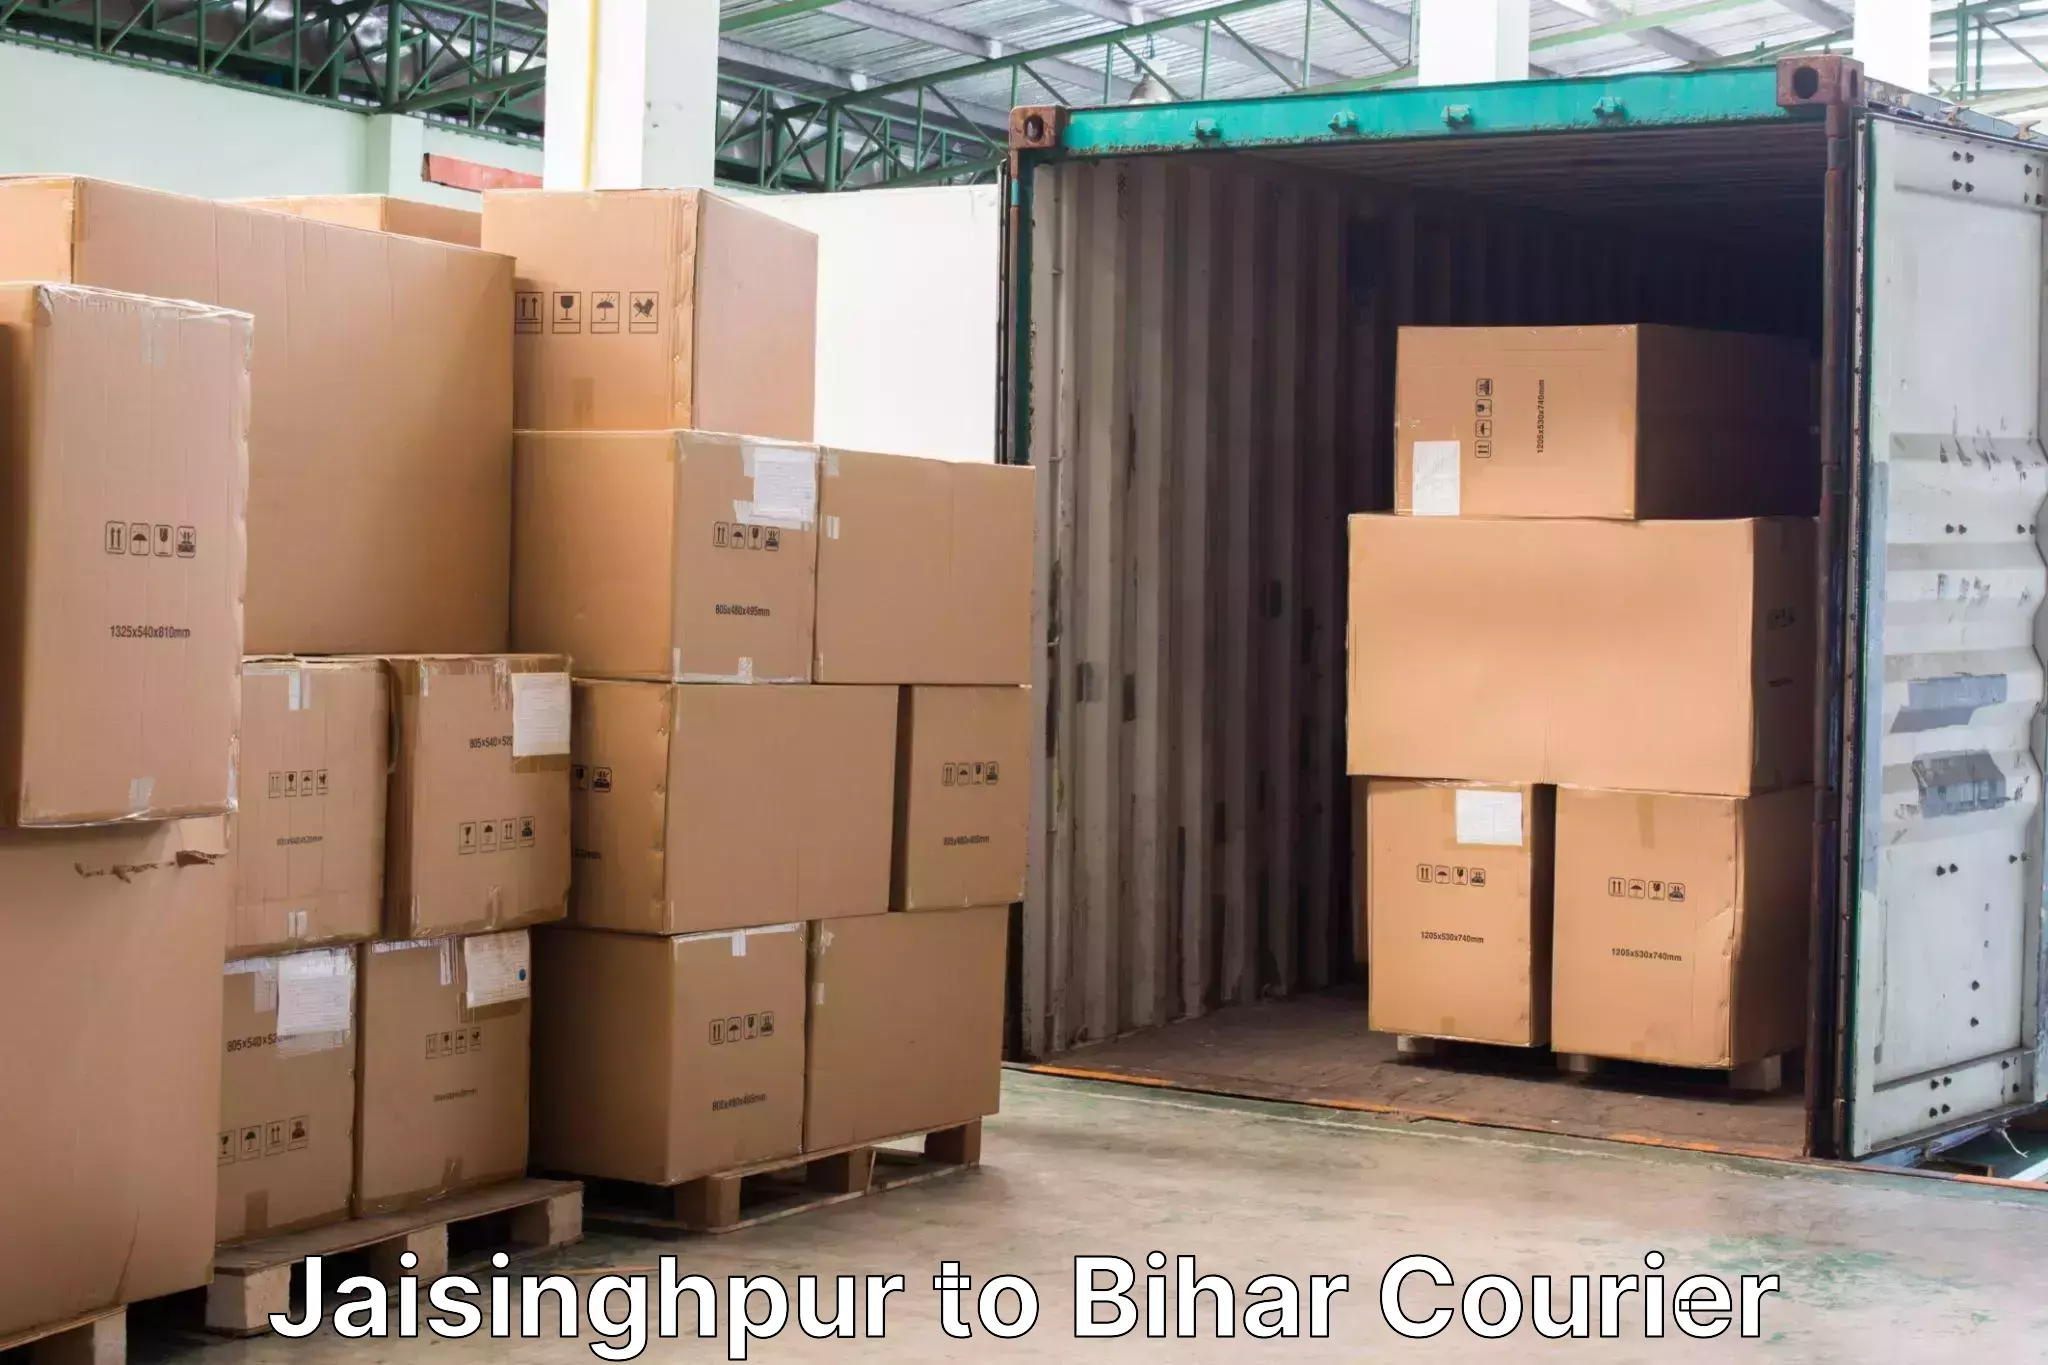 Baggage transport professionals Jaisinghpur to Manihari